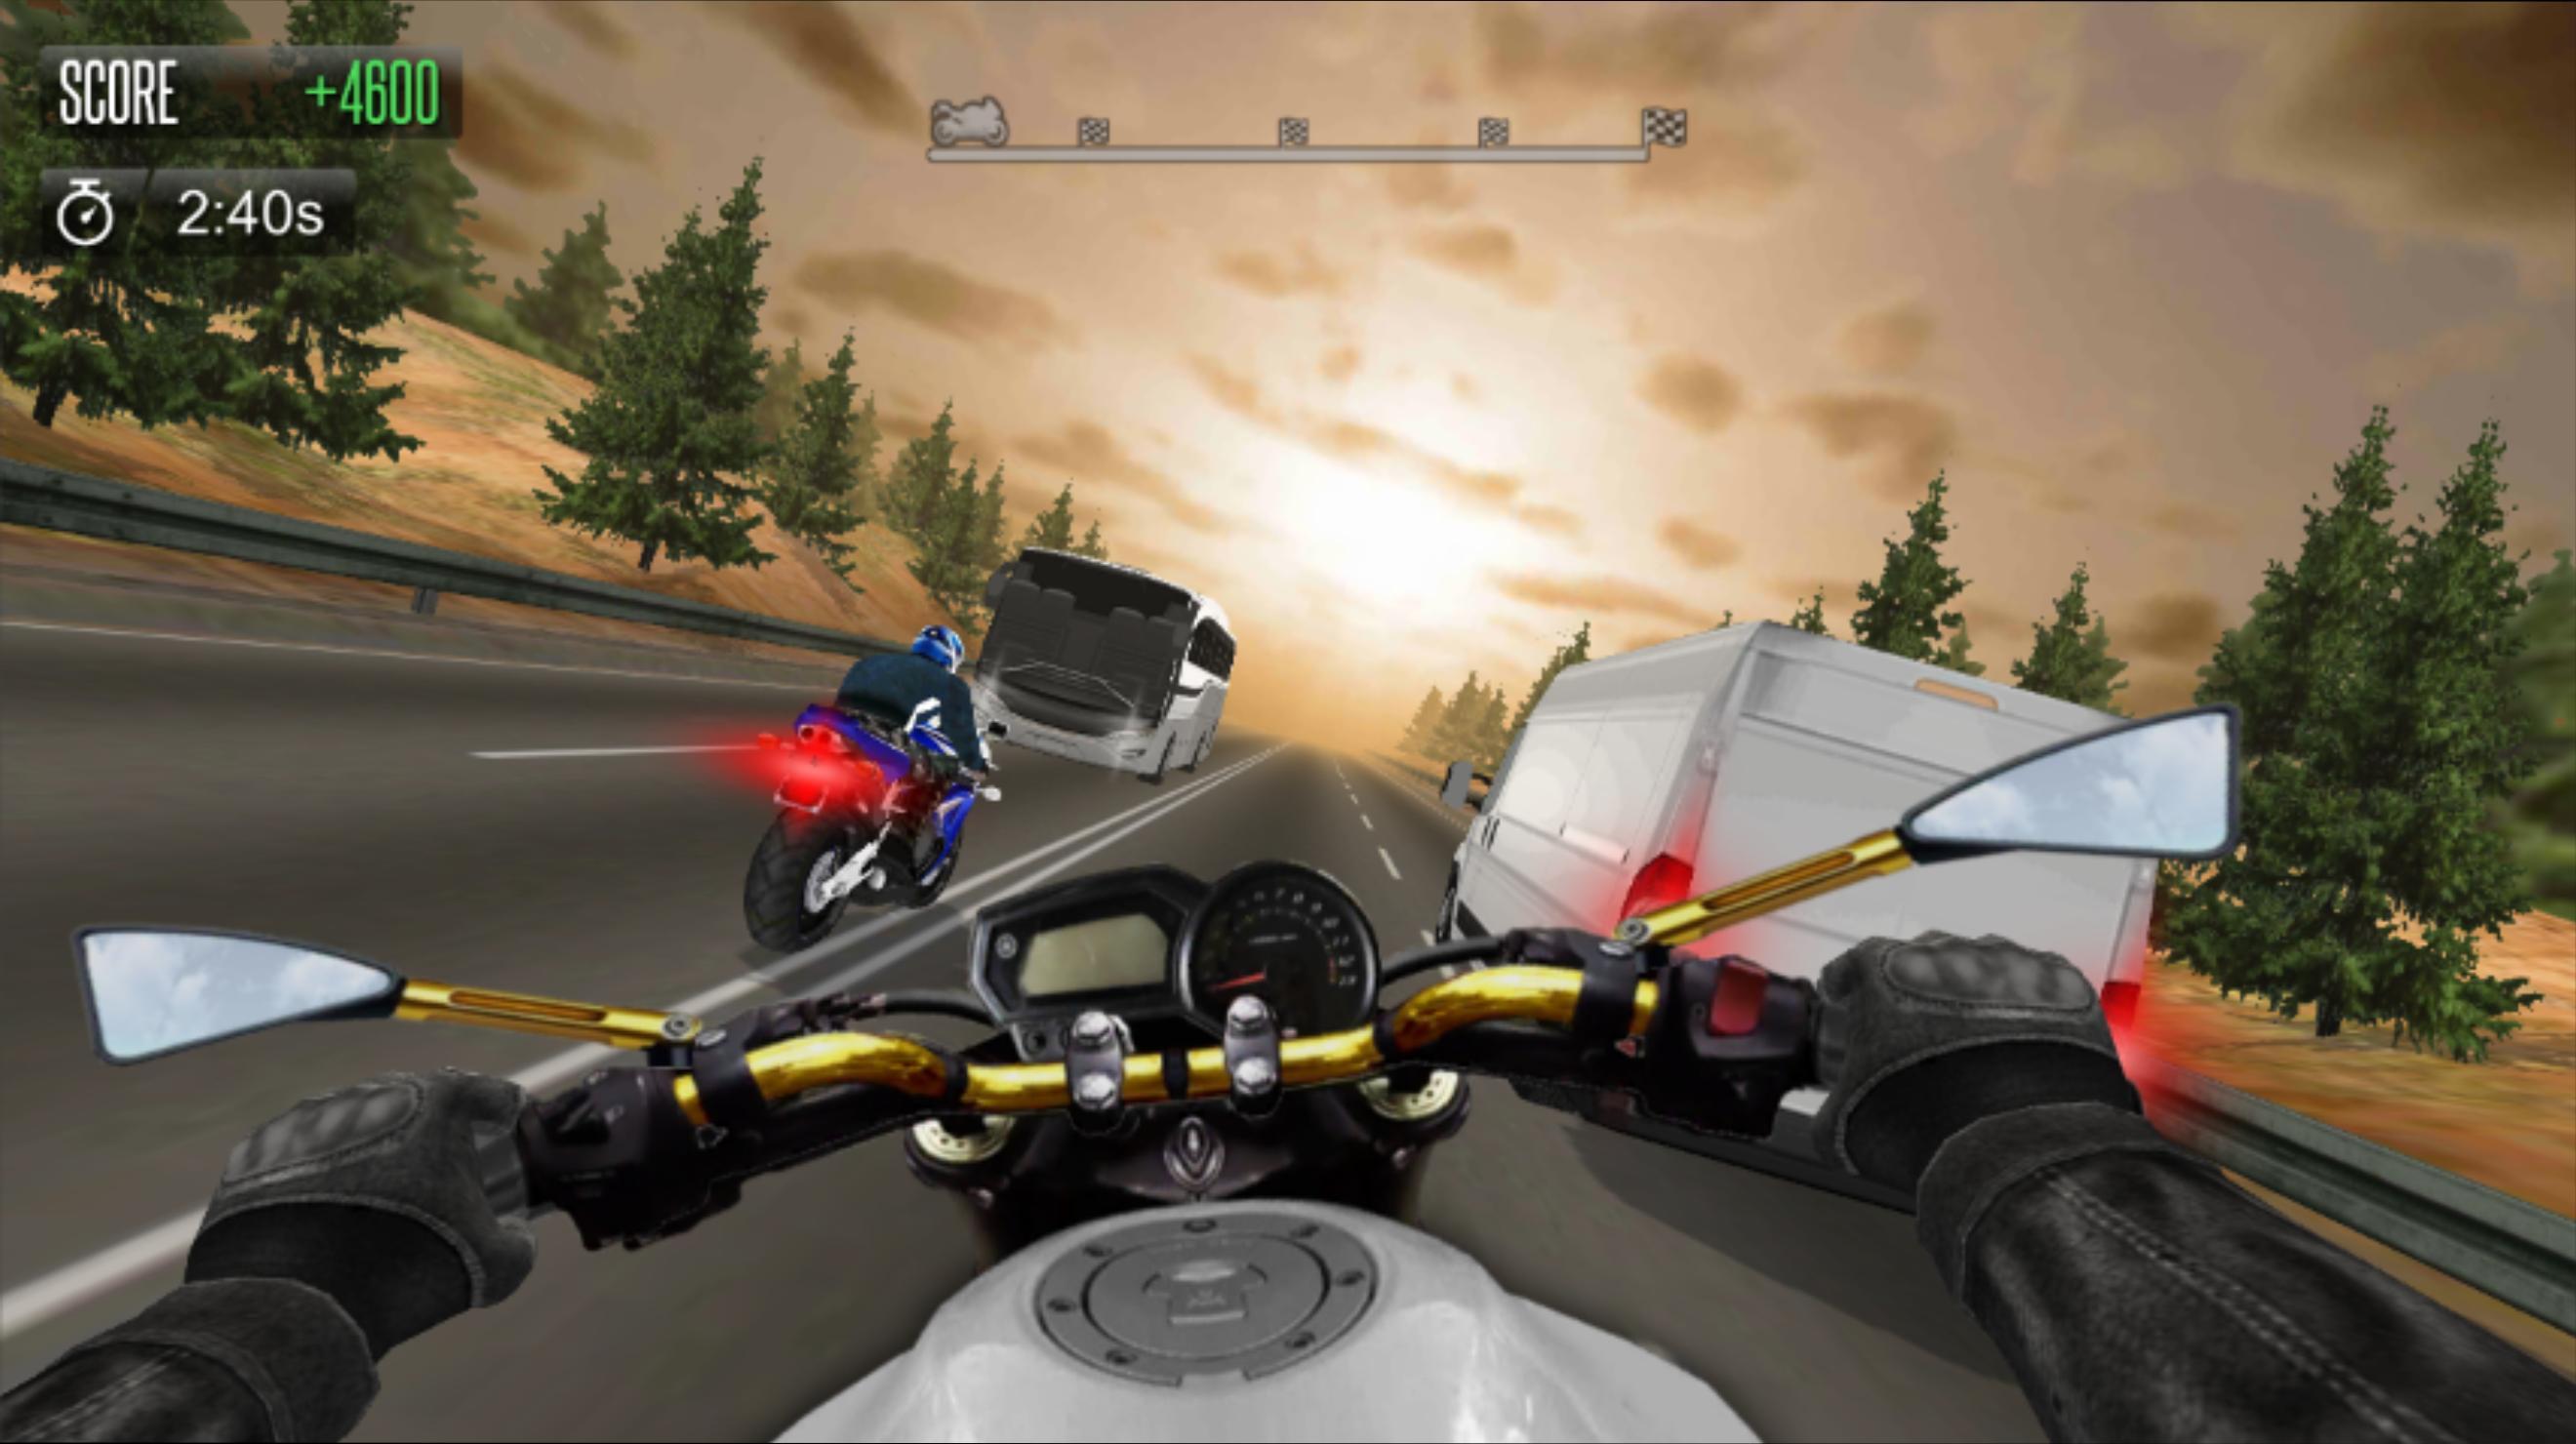 Bike simulator. Мото симулятор на ПК. Elma игра на мотоцикле. Игры про мотик на плойку. Мото игры 2д на андроид.